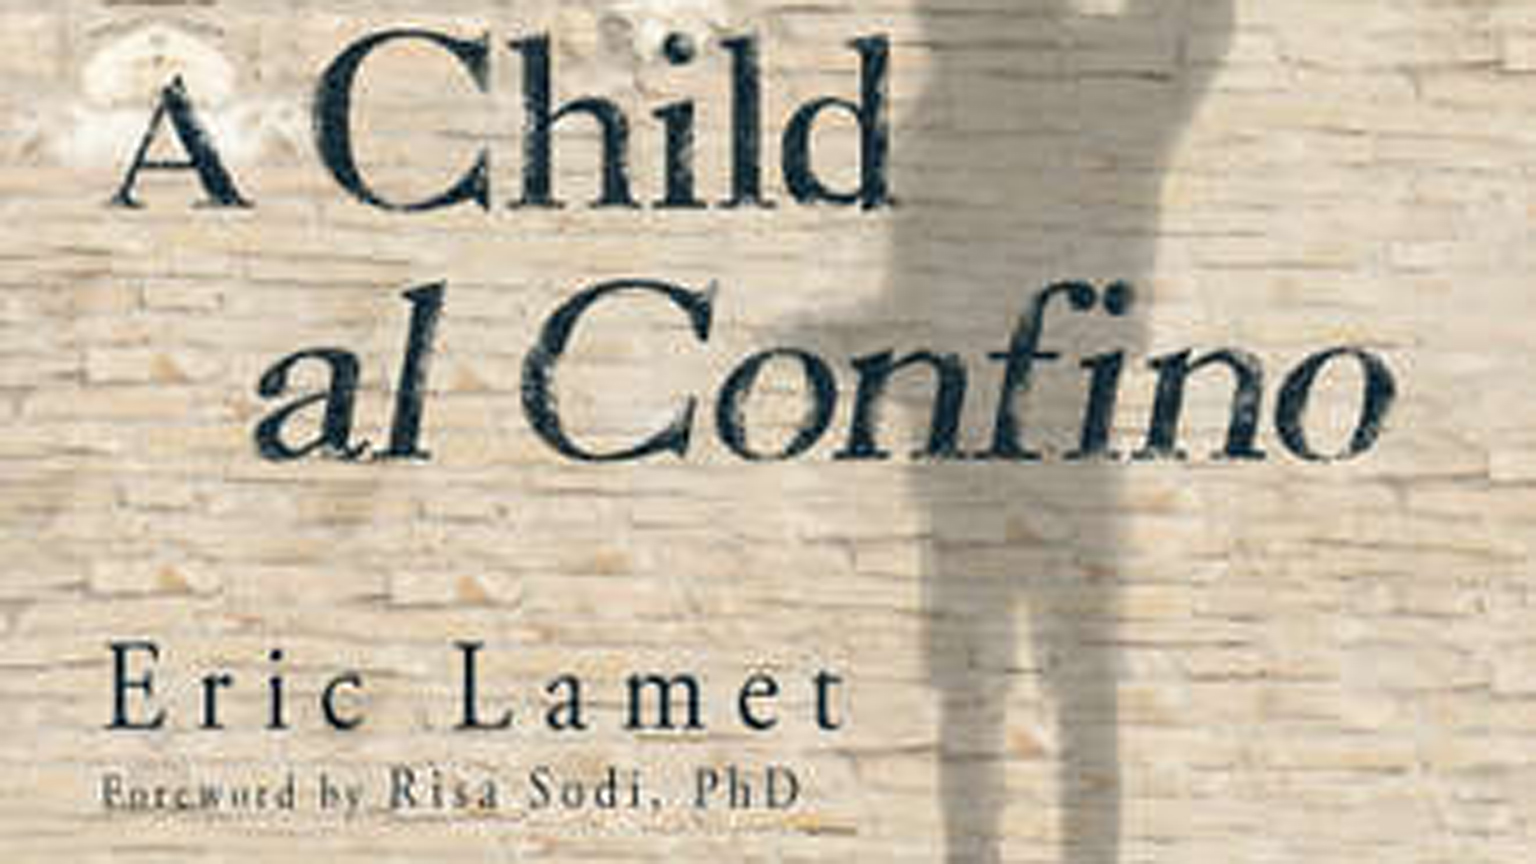 Tamarac Author Eric Lamet and “A Child al Confino”